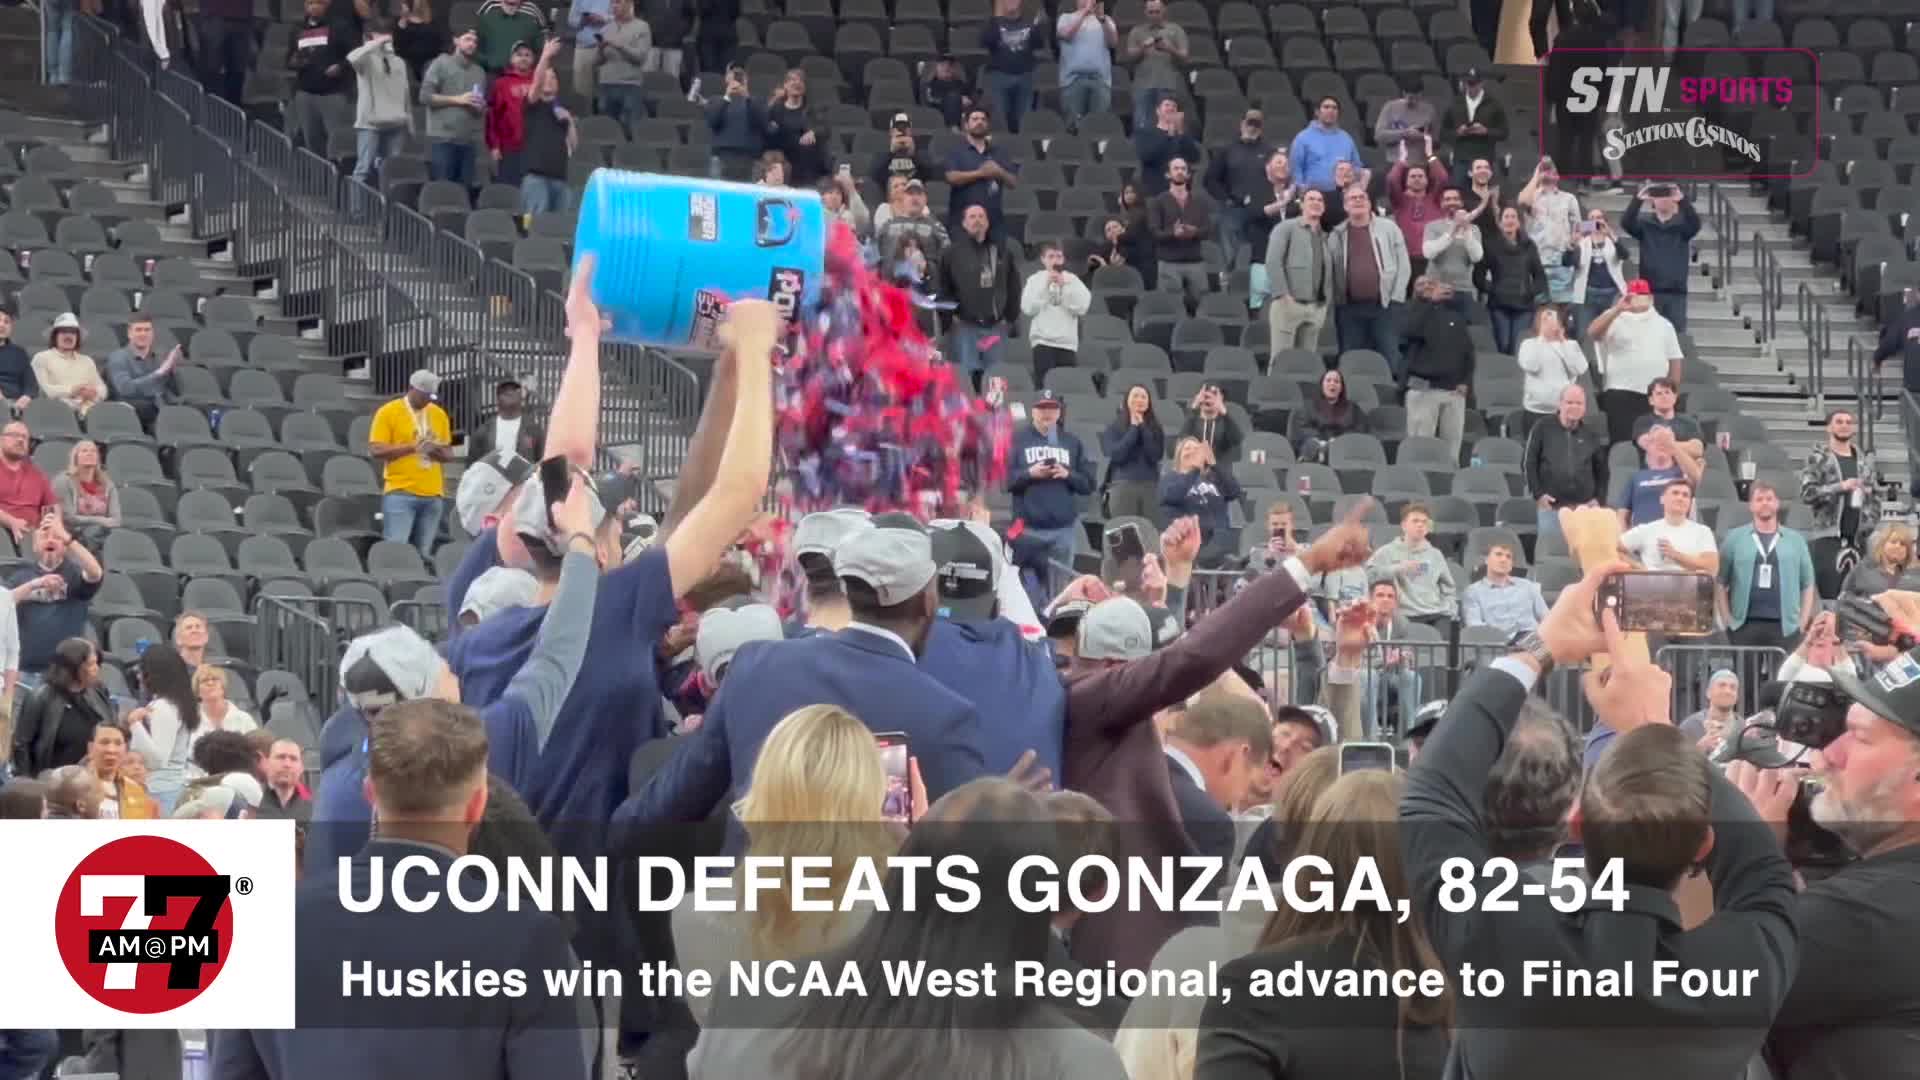 Uconn defeats Gonzaga